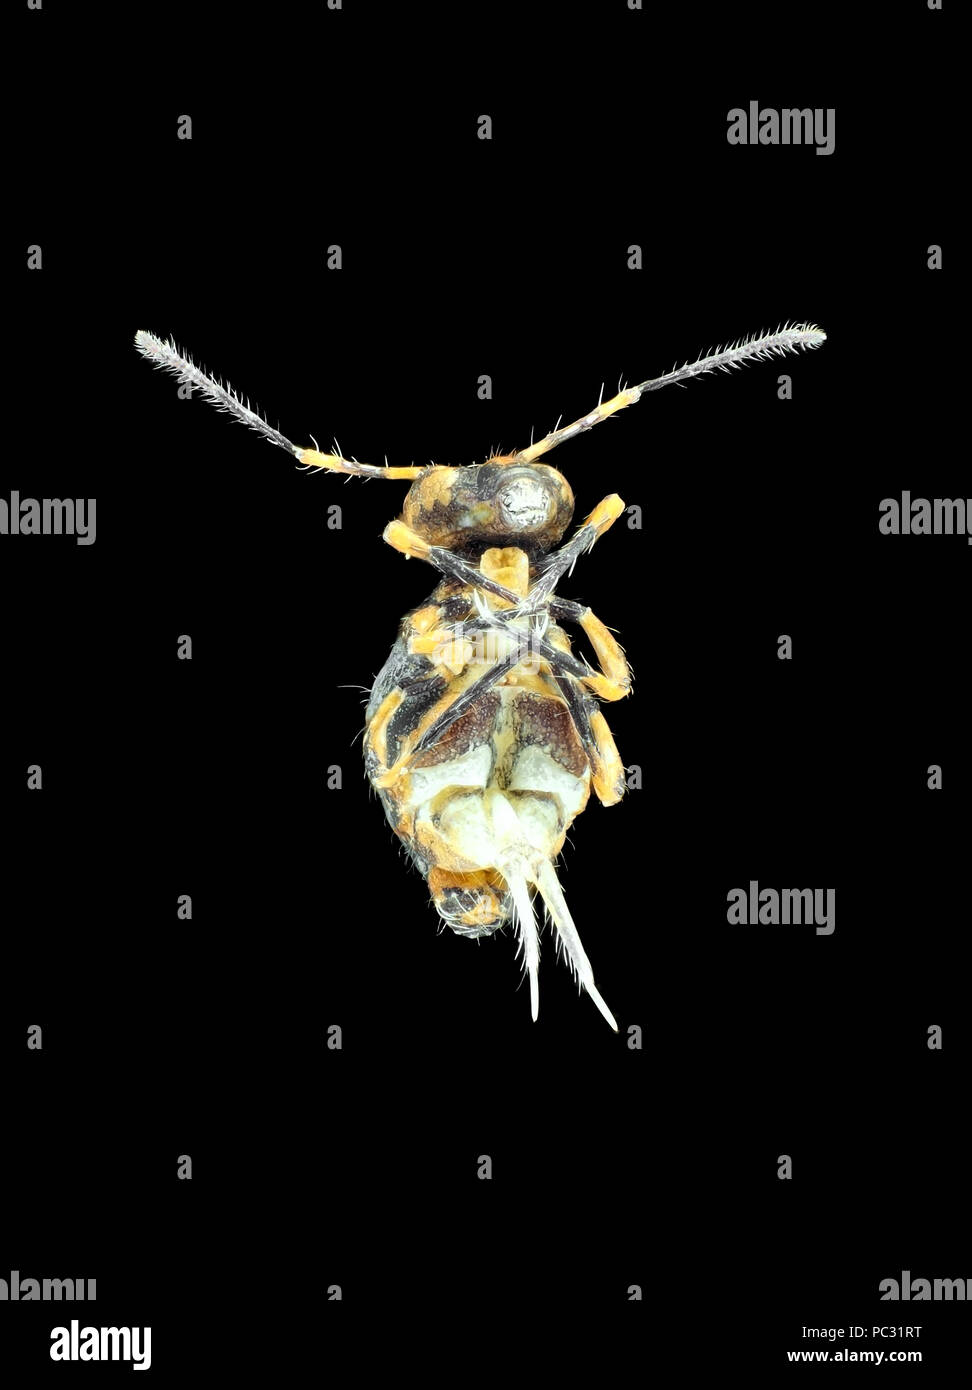 Extreme macro photographie (microphotographie) d'un amas globulaire springtail (Collembola), vue ventrale montrant le "printemps" Banque D'Images